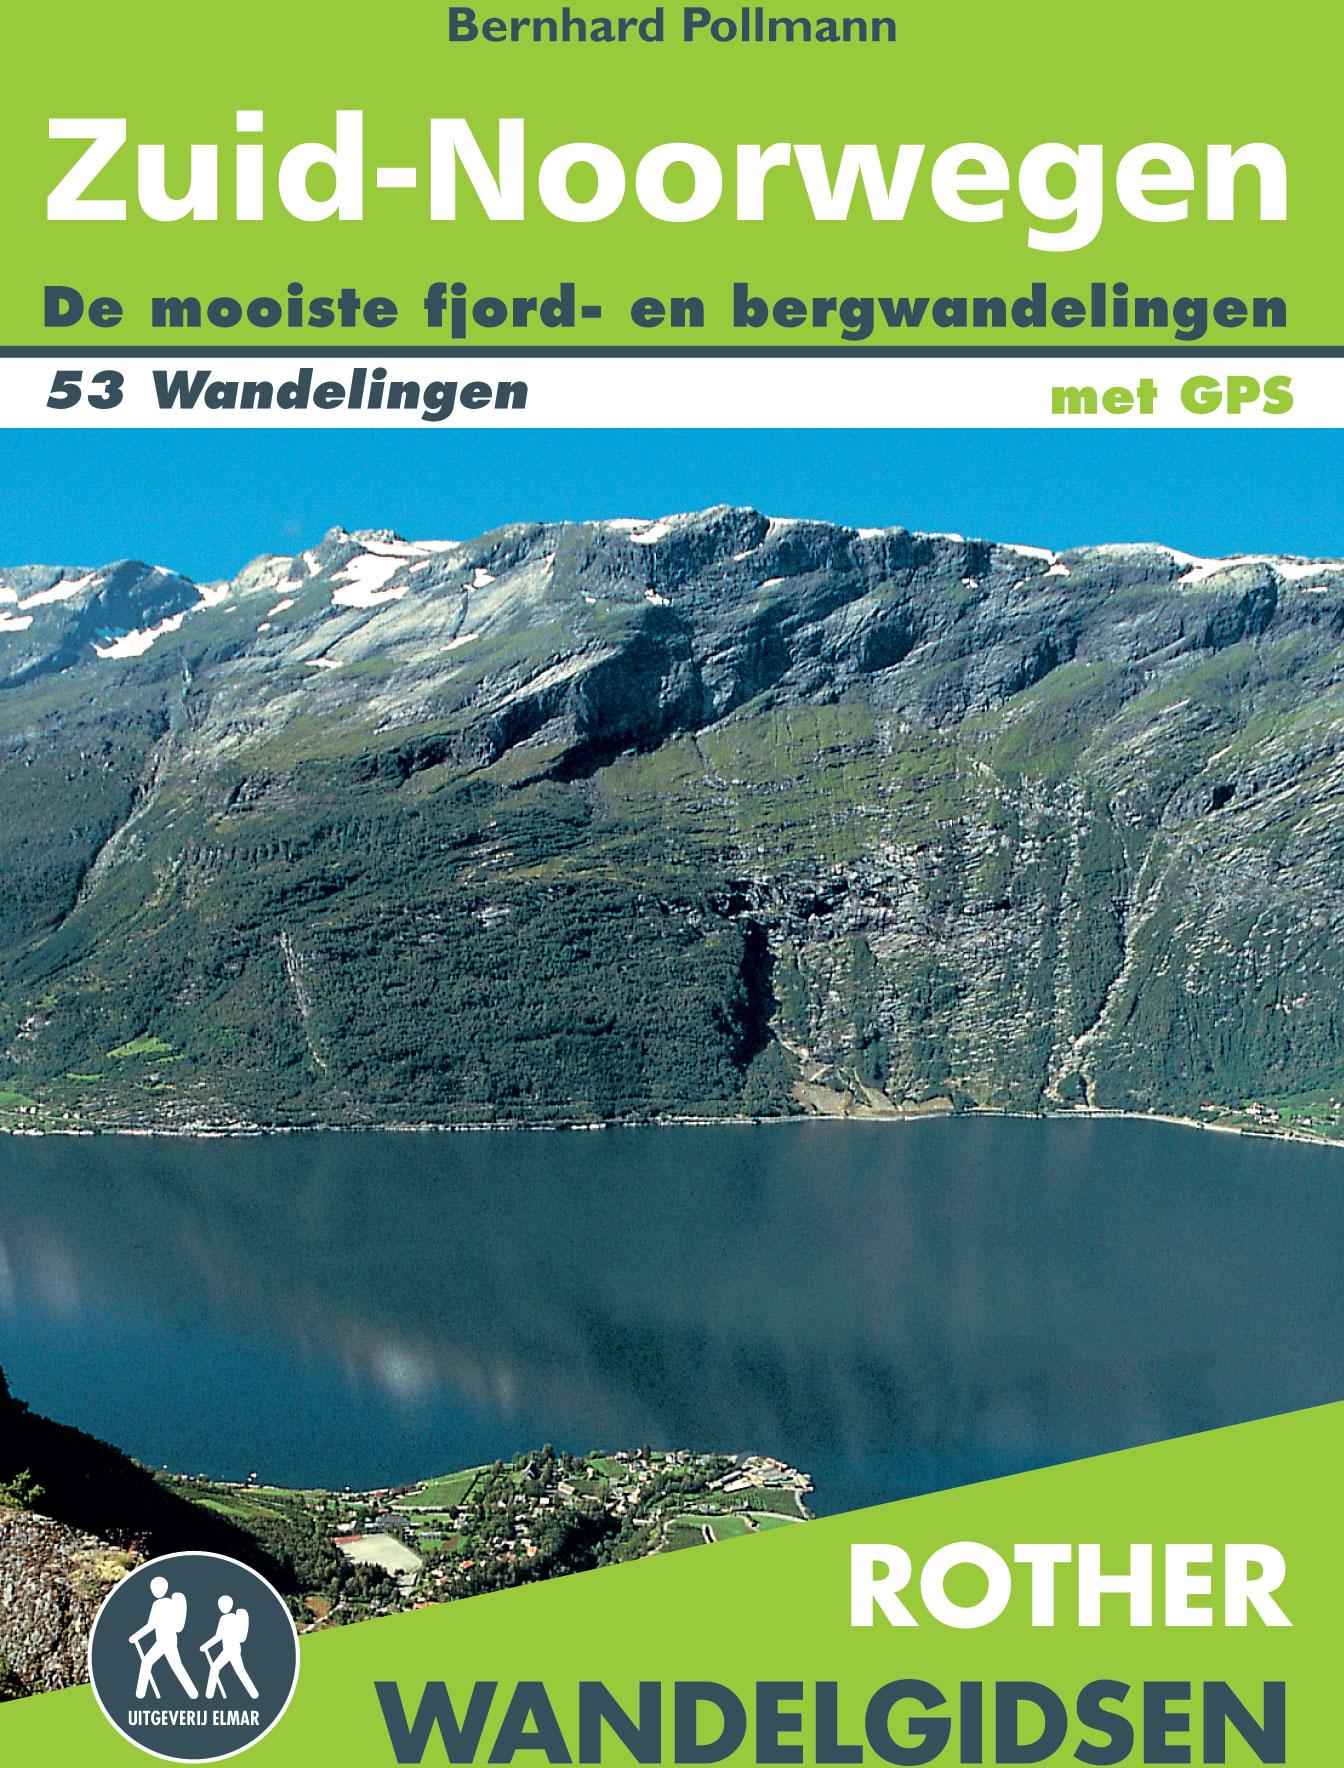 Noorwegen Zuid wandelgids 53 wandelingen met GPS